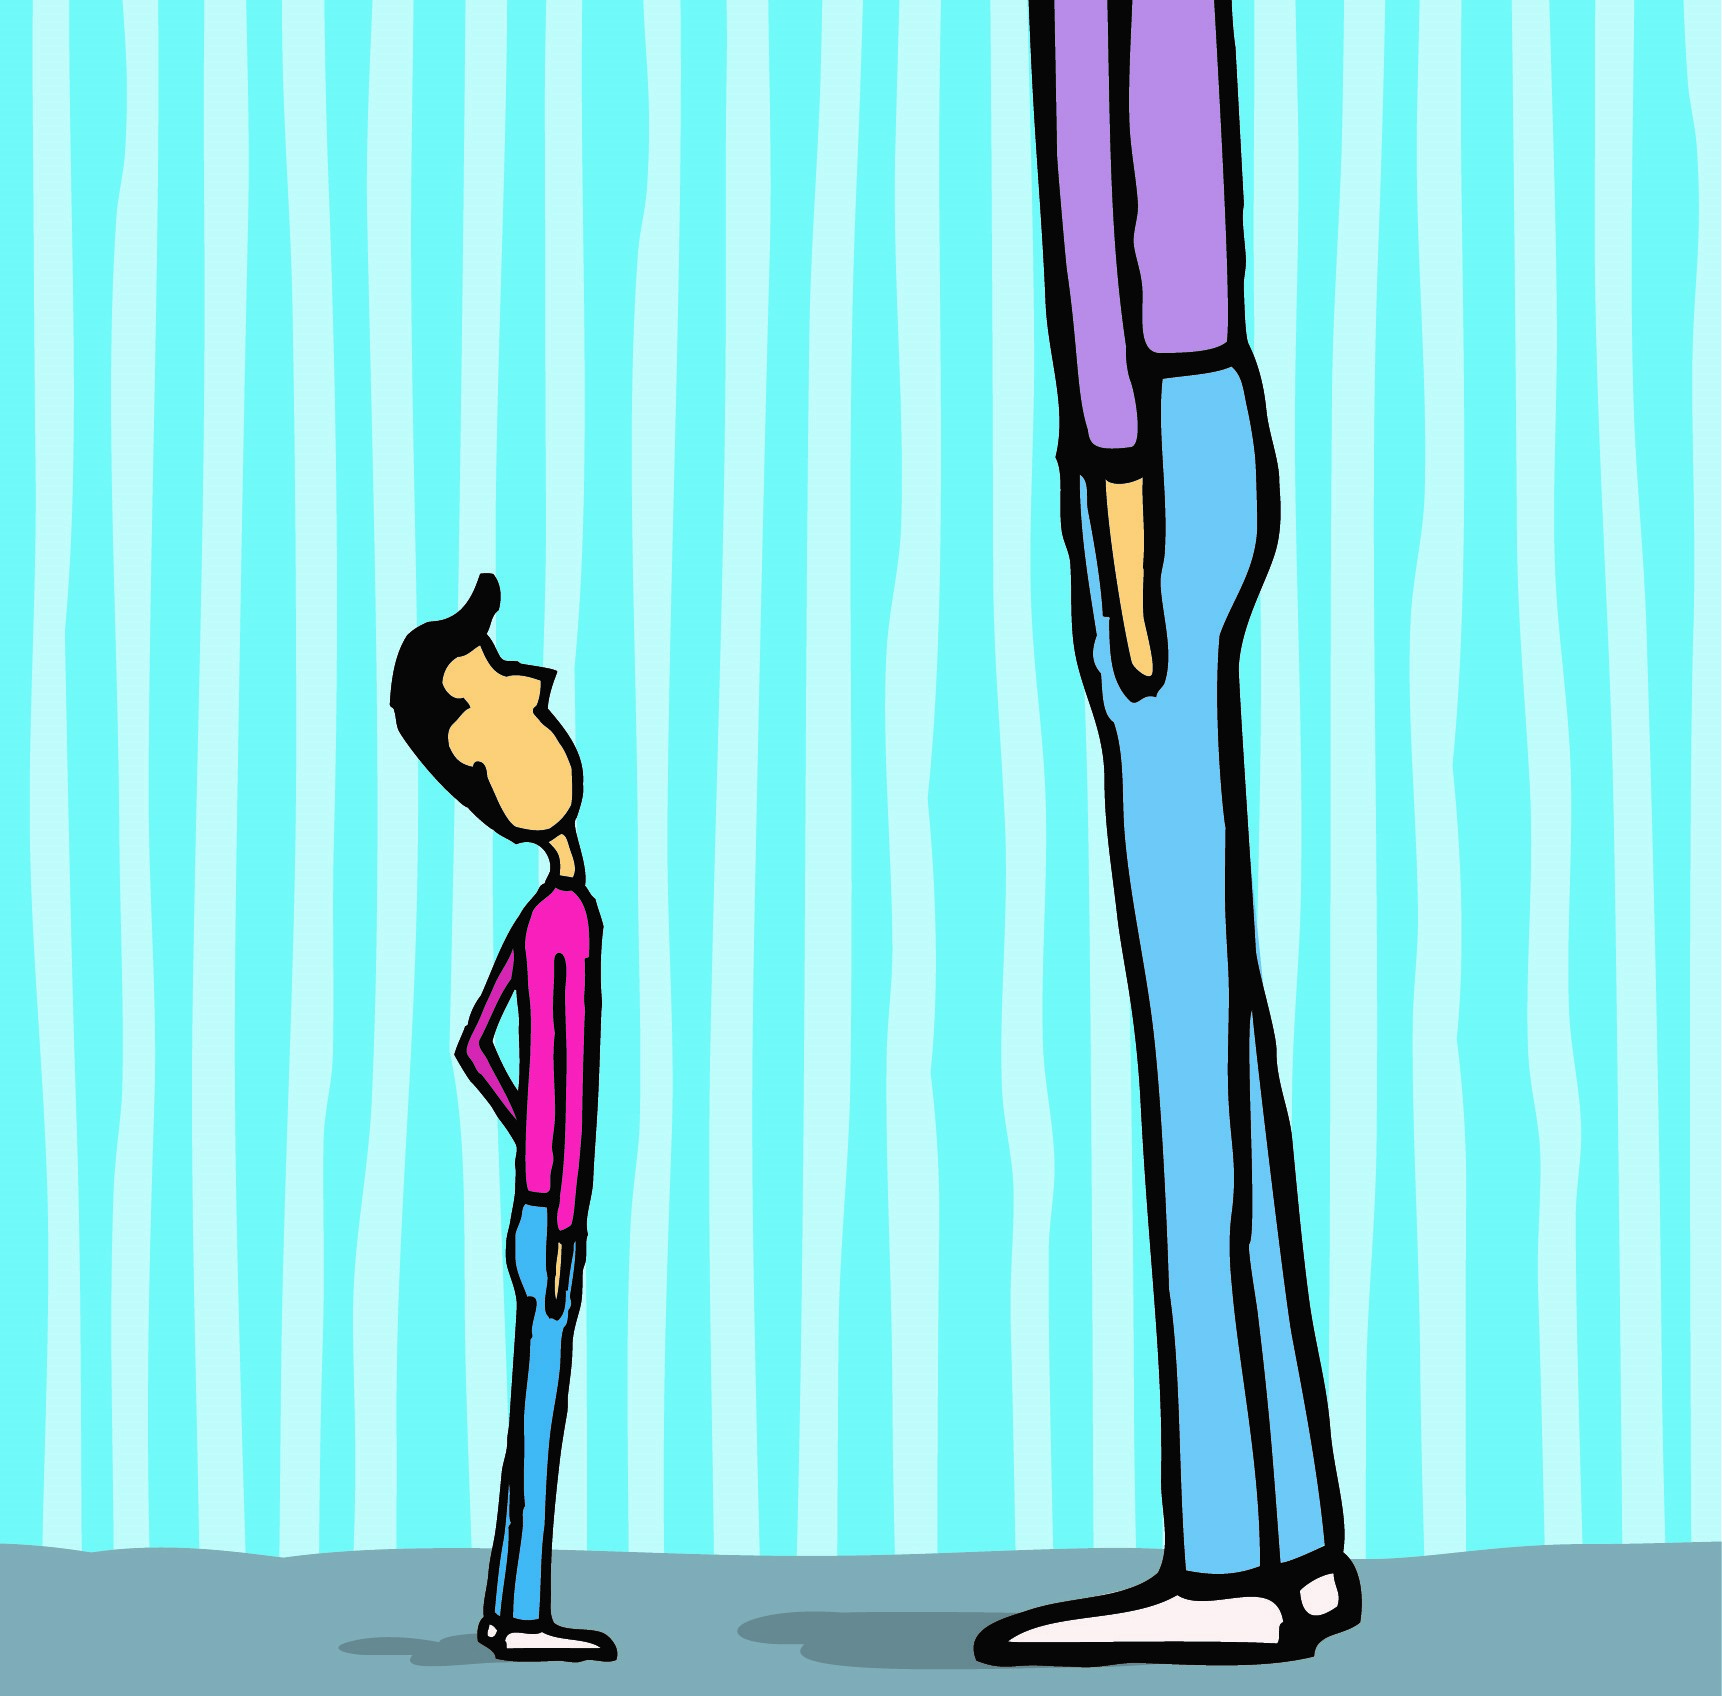 Οι ψηλοί και οι λεπτές